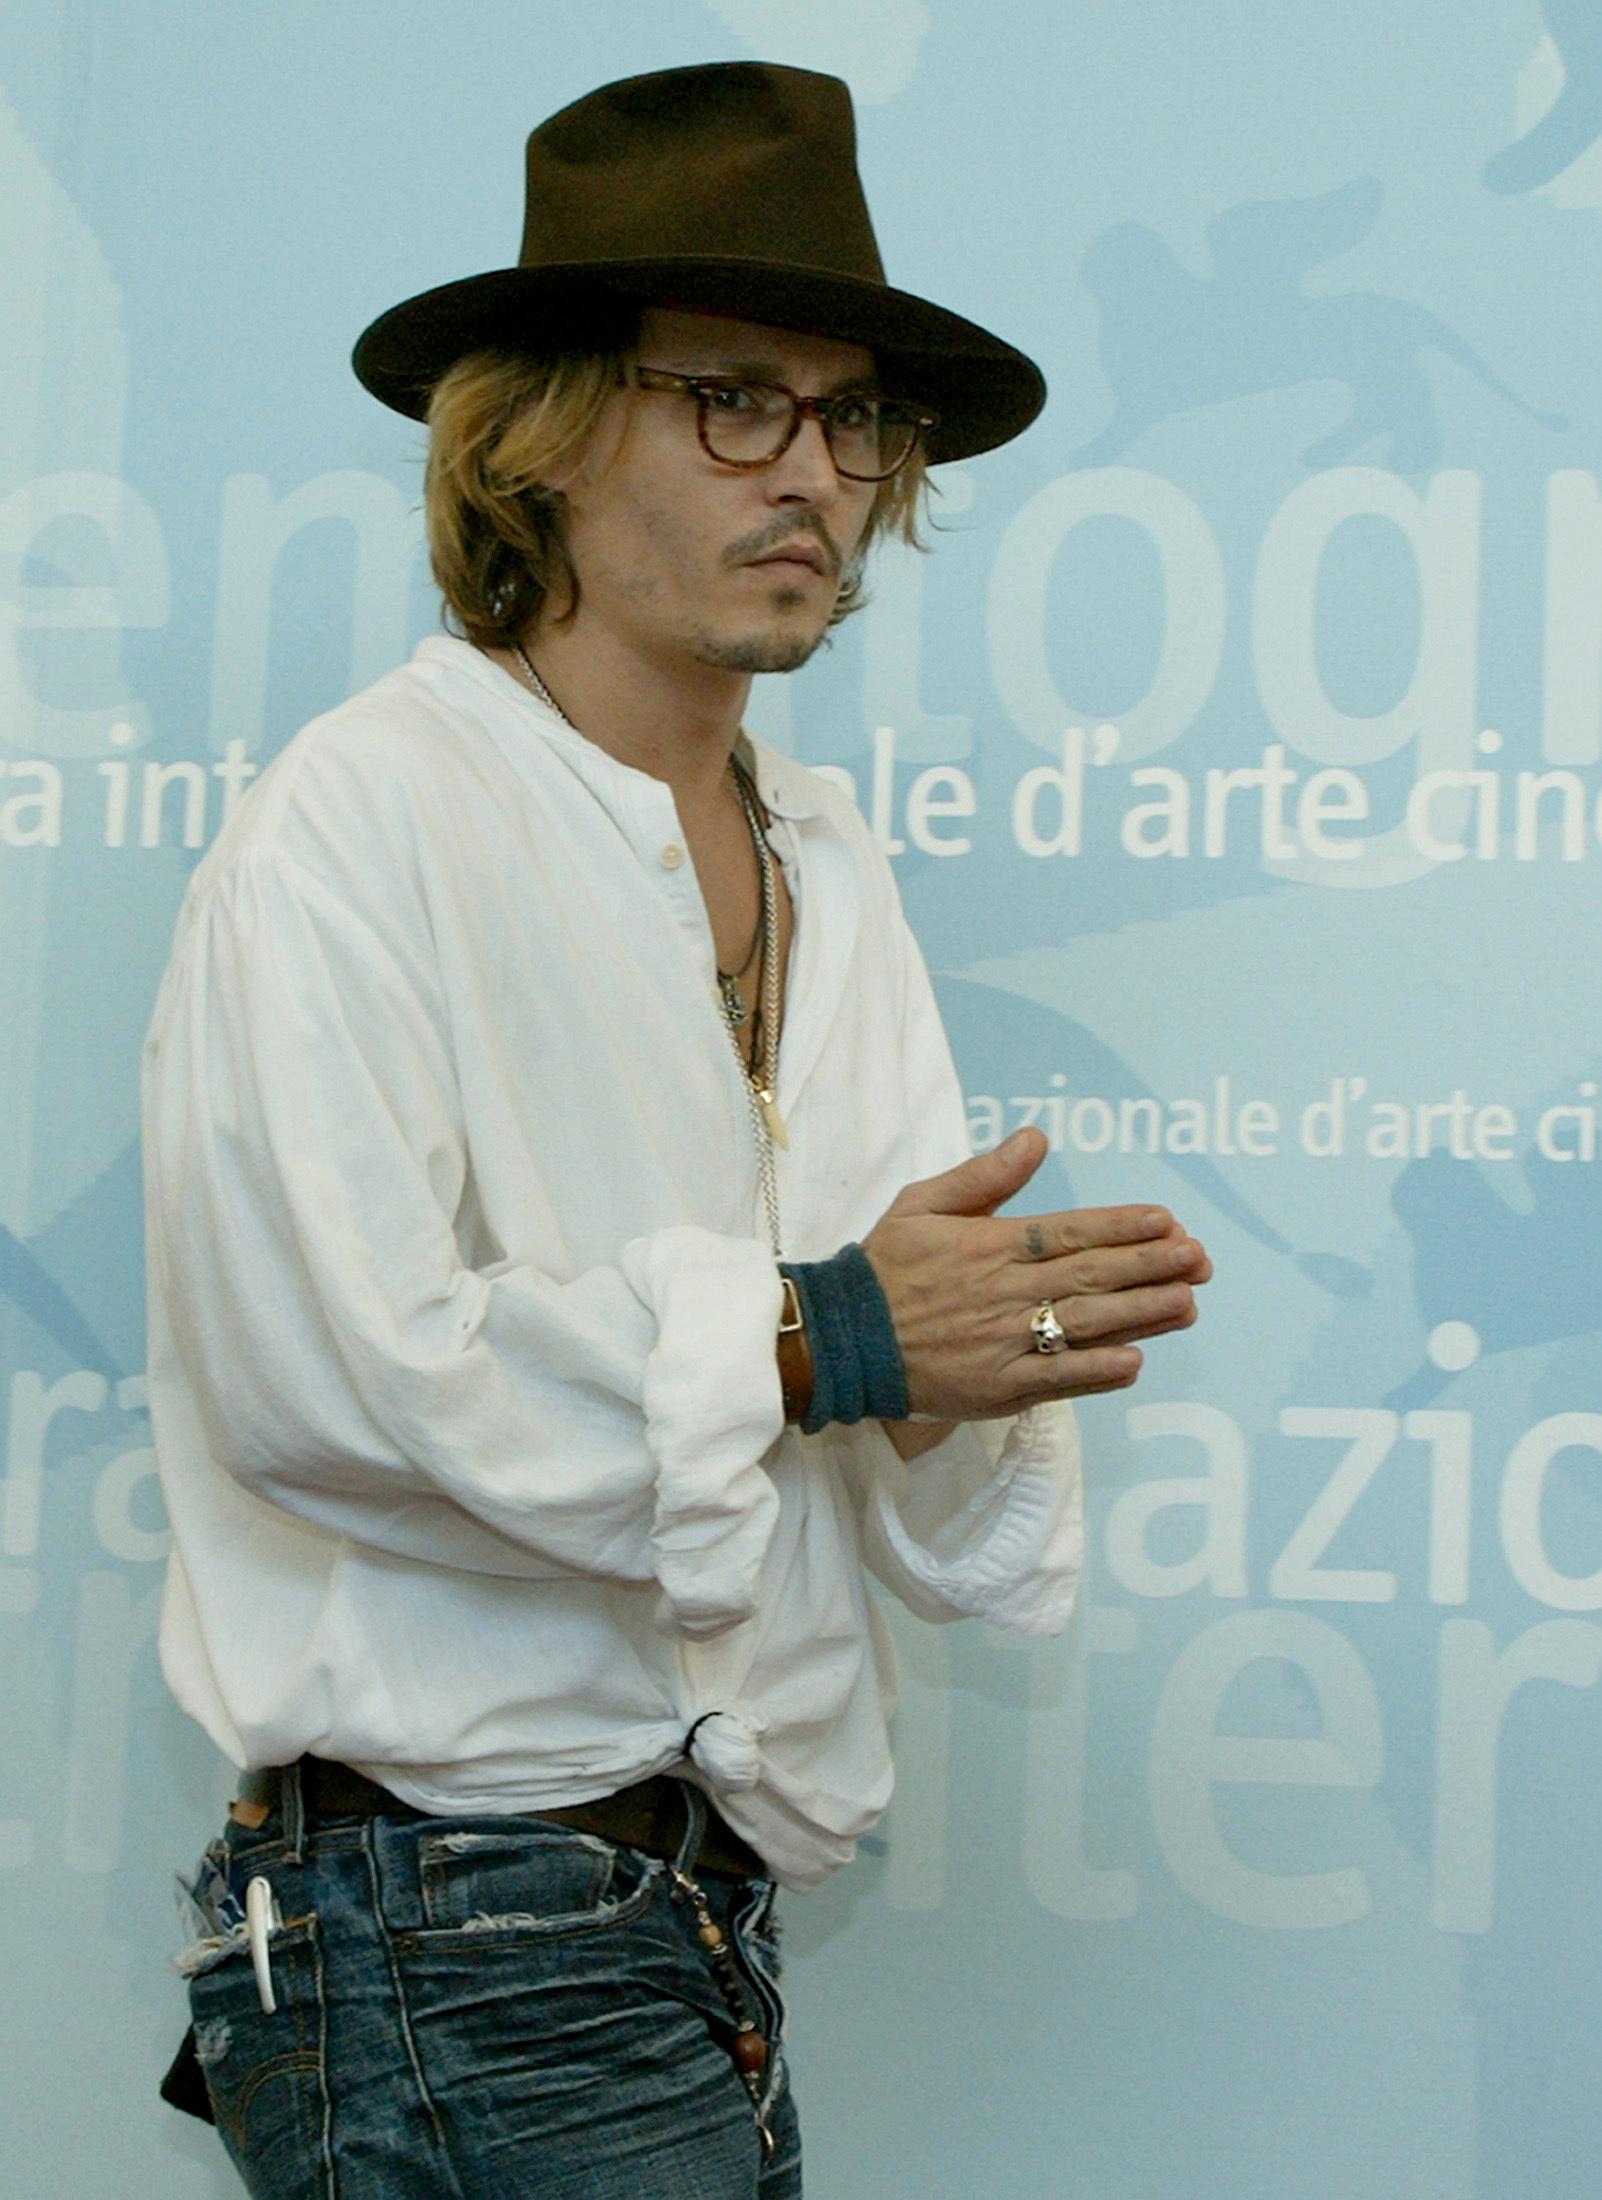 2003: Skuespilleren deltar på filmfestivalen i Venice iført en løs, hvit skjorte, briller, hatt og jeans.